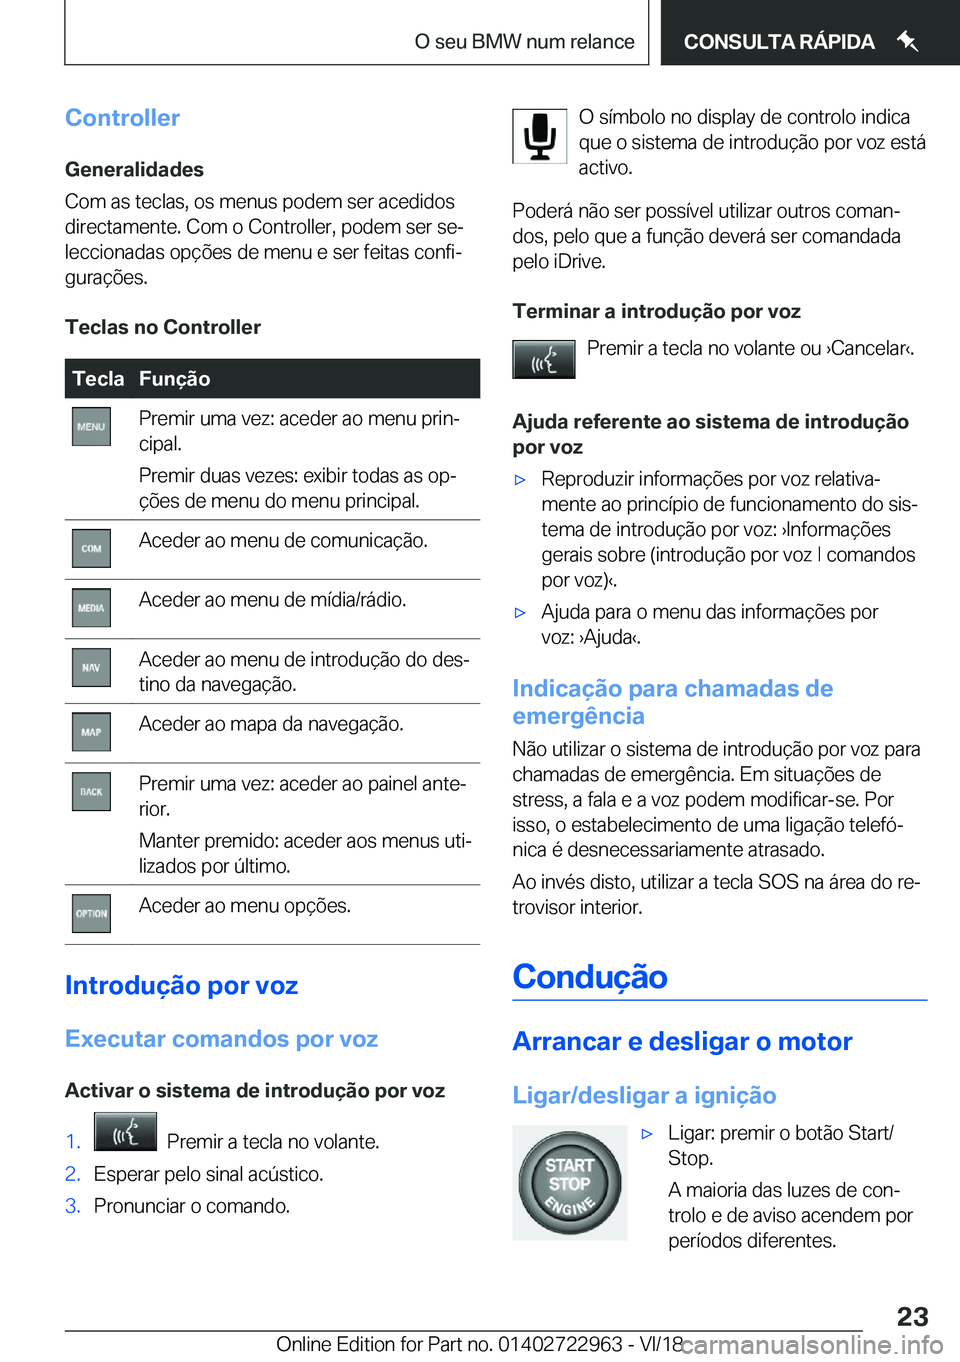 BMW M4 2019  Manual do condutor (in Portuguese) �C�o�n�t�r�o�l�l�e�r�G�e�n�e�r�a�l�i�d�a�d�e�s
�C�o�m��a�s��t�e�c�l�a�s�,��o�s��m�e�n�u�s��p�o�d�e�m��s�e�r��a�c�e�d�i�d�o�s
�d�i�r�e�c�t�a�m�e�n�t�e�.��C�o�m��o��C�o�n�t�r�o�l�l�e�r�,��p�o